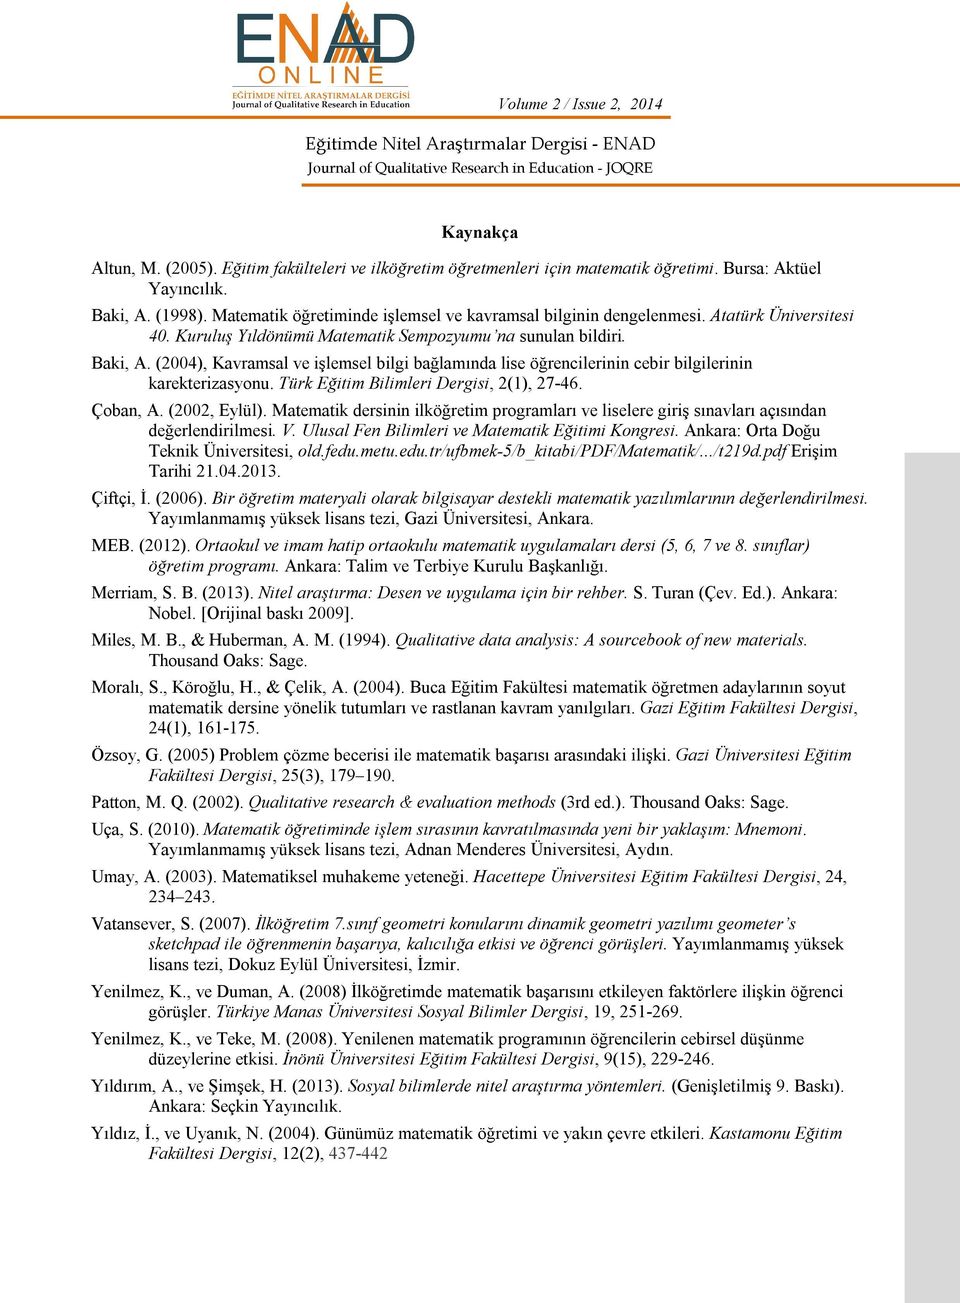 (2004), Kavramsal ve işlemsel bilgi bağlamında lise öğrencilerinin cebir bilgilerinin karekterizasyonu. Türk Eğitim Bilimleri Dergisi, 2(1), 27-46. Çoban, A. (2002, Eylül).